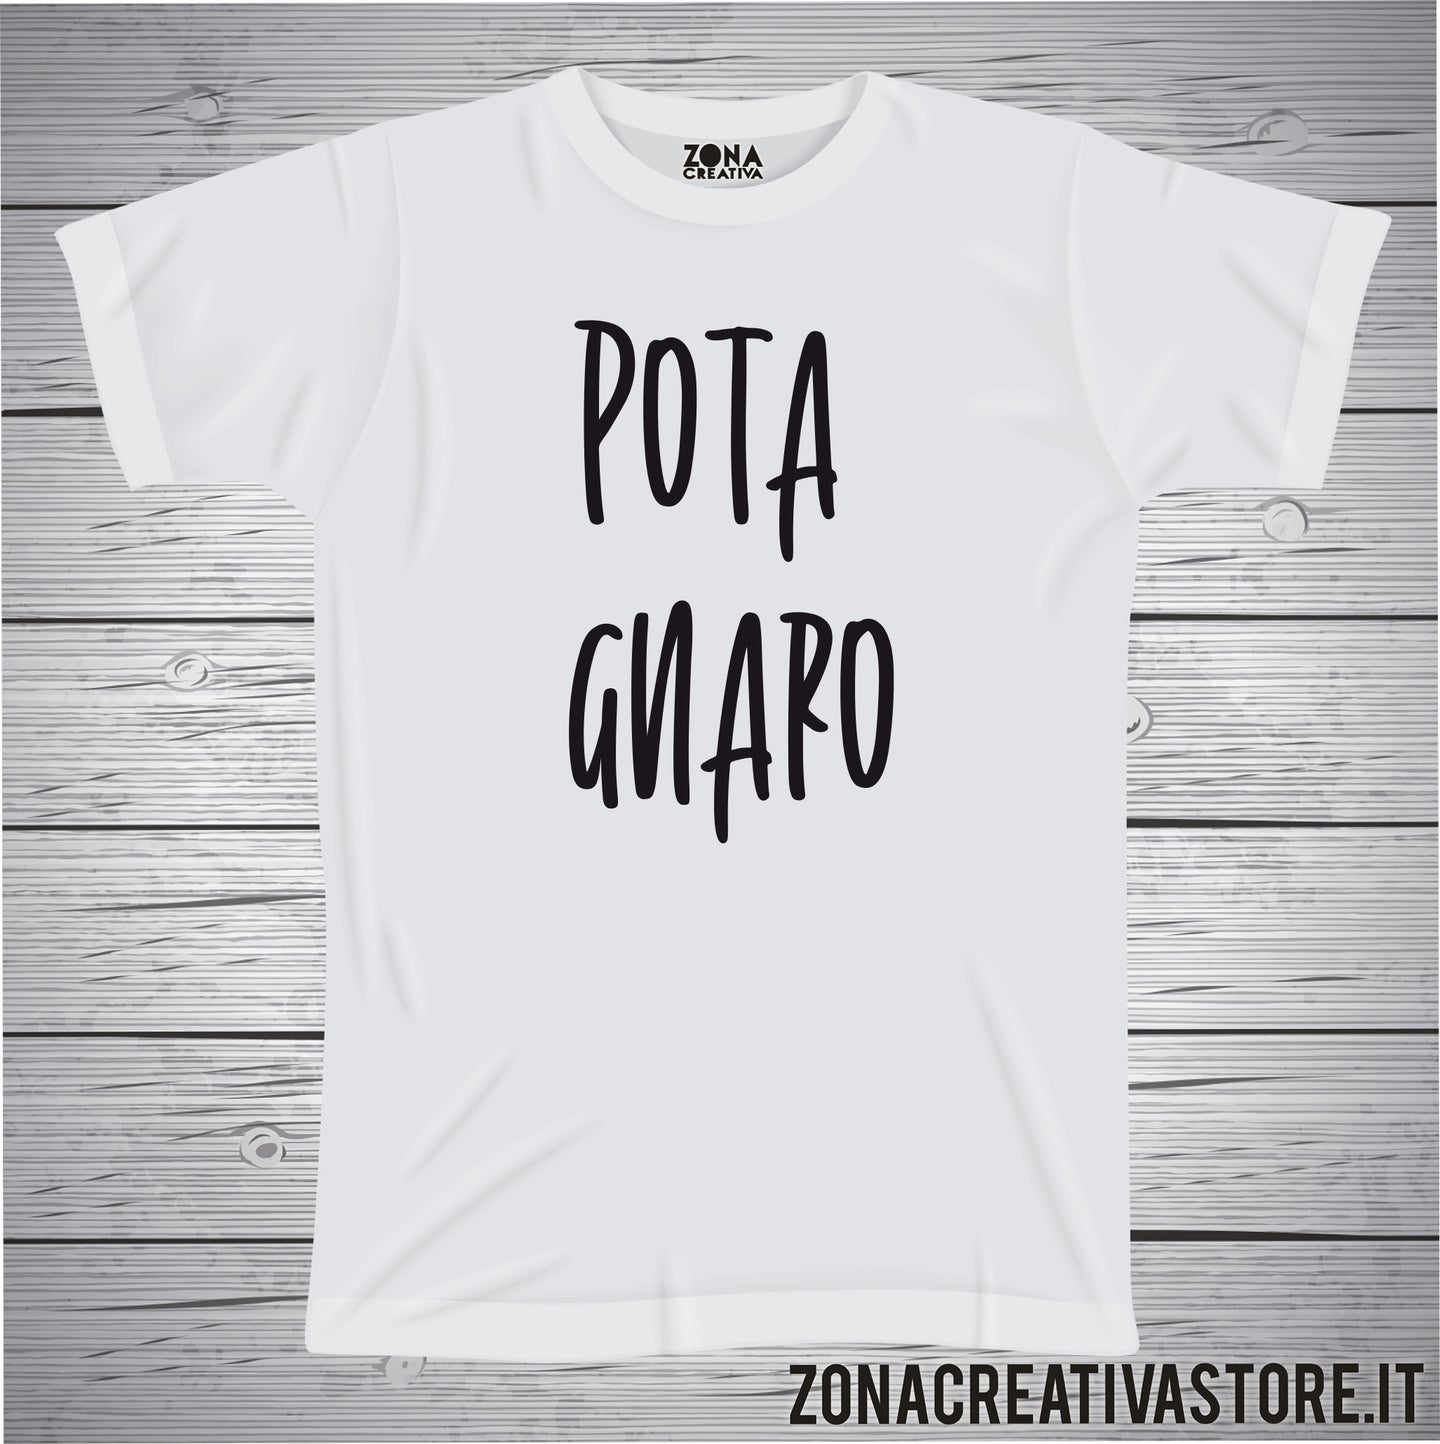 T-shirt divertente con frase in dialetto Pota gnaro